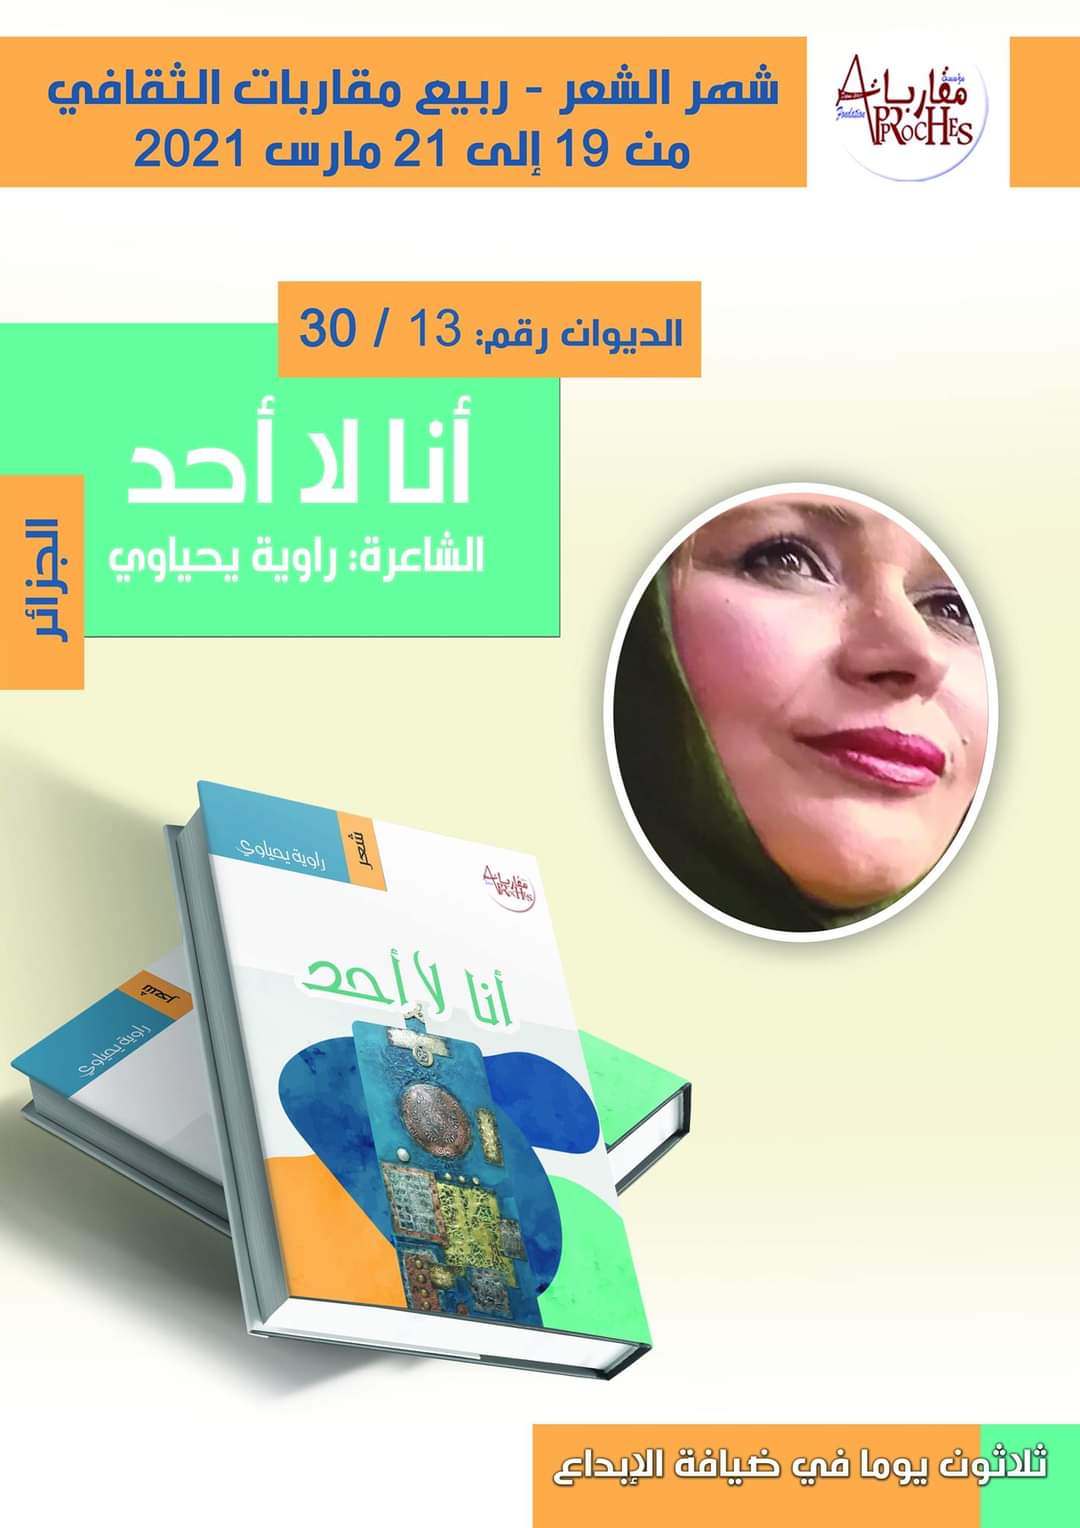 الديوان الثالث عشر من دواوين شهر الشعر الثلاثين. للشاعرة الجزائرية راوية يحياوي بعنوان:” أنا لا أحد “